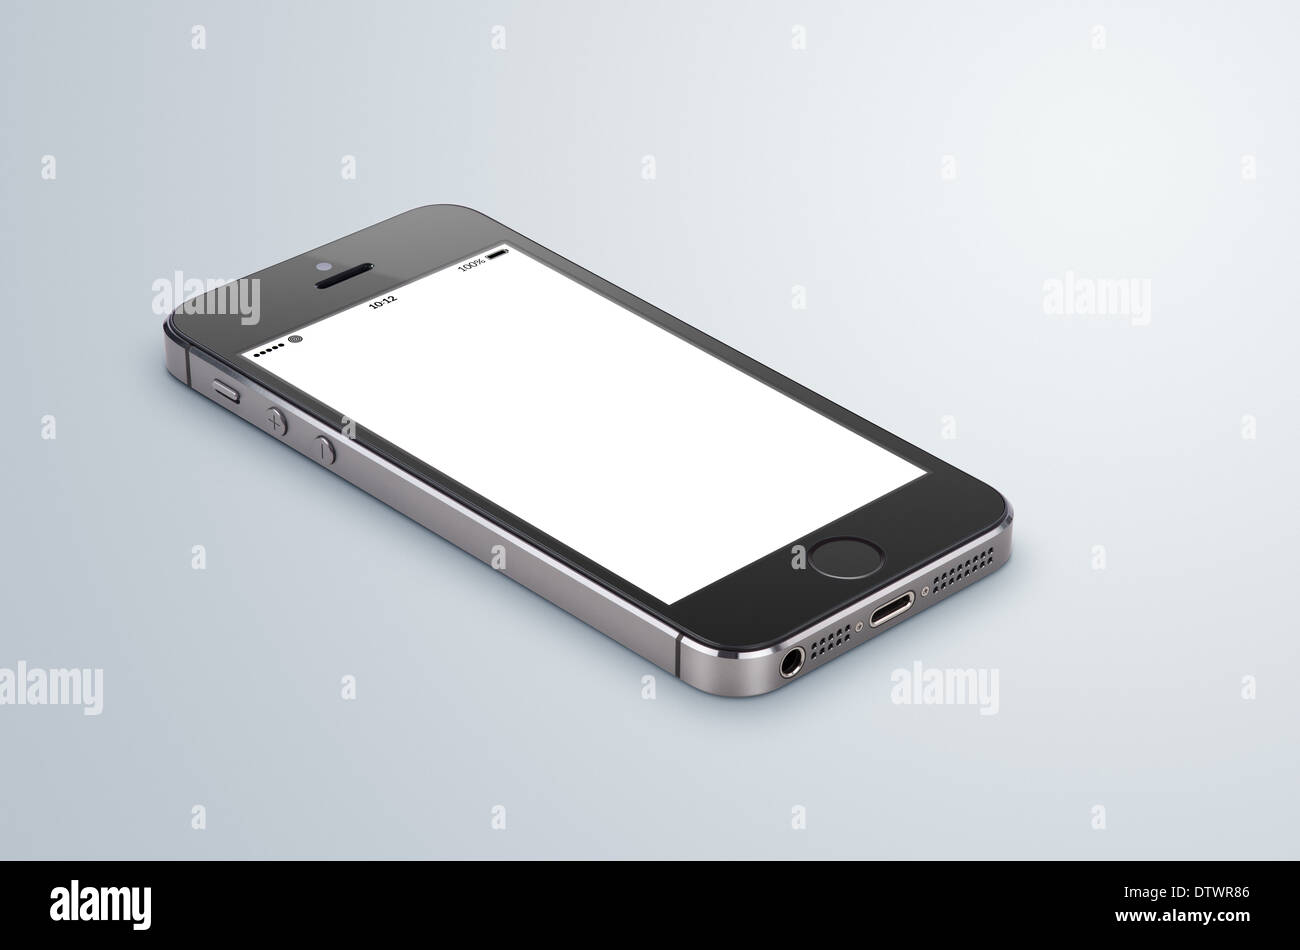 Schwarze moderne Smartphone mit leeren Bildschirm liegt auf die graue Fläche. Gesamte Bild im Fokus, hohe Qualität. Stockfoto